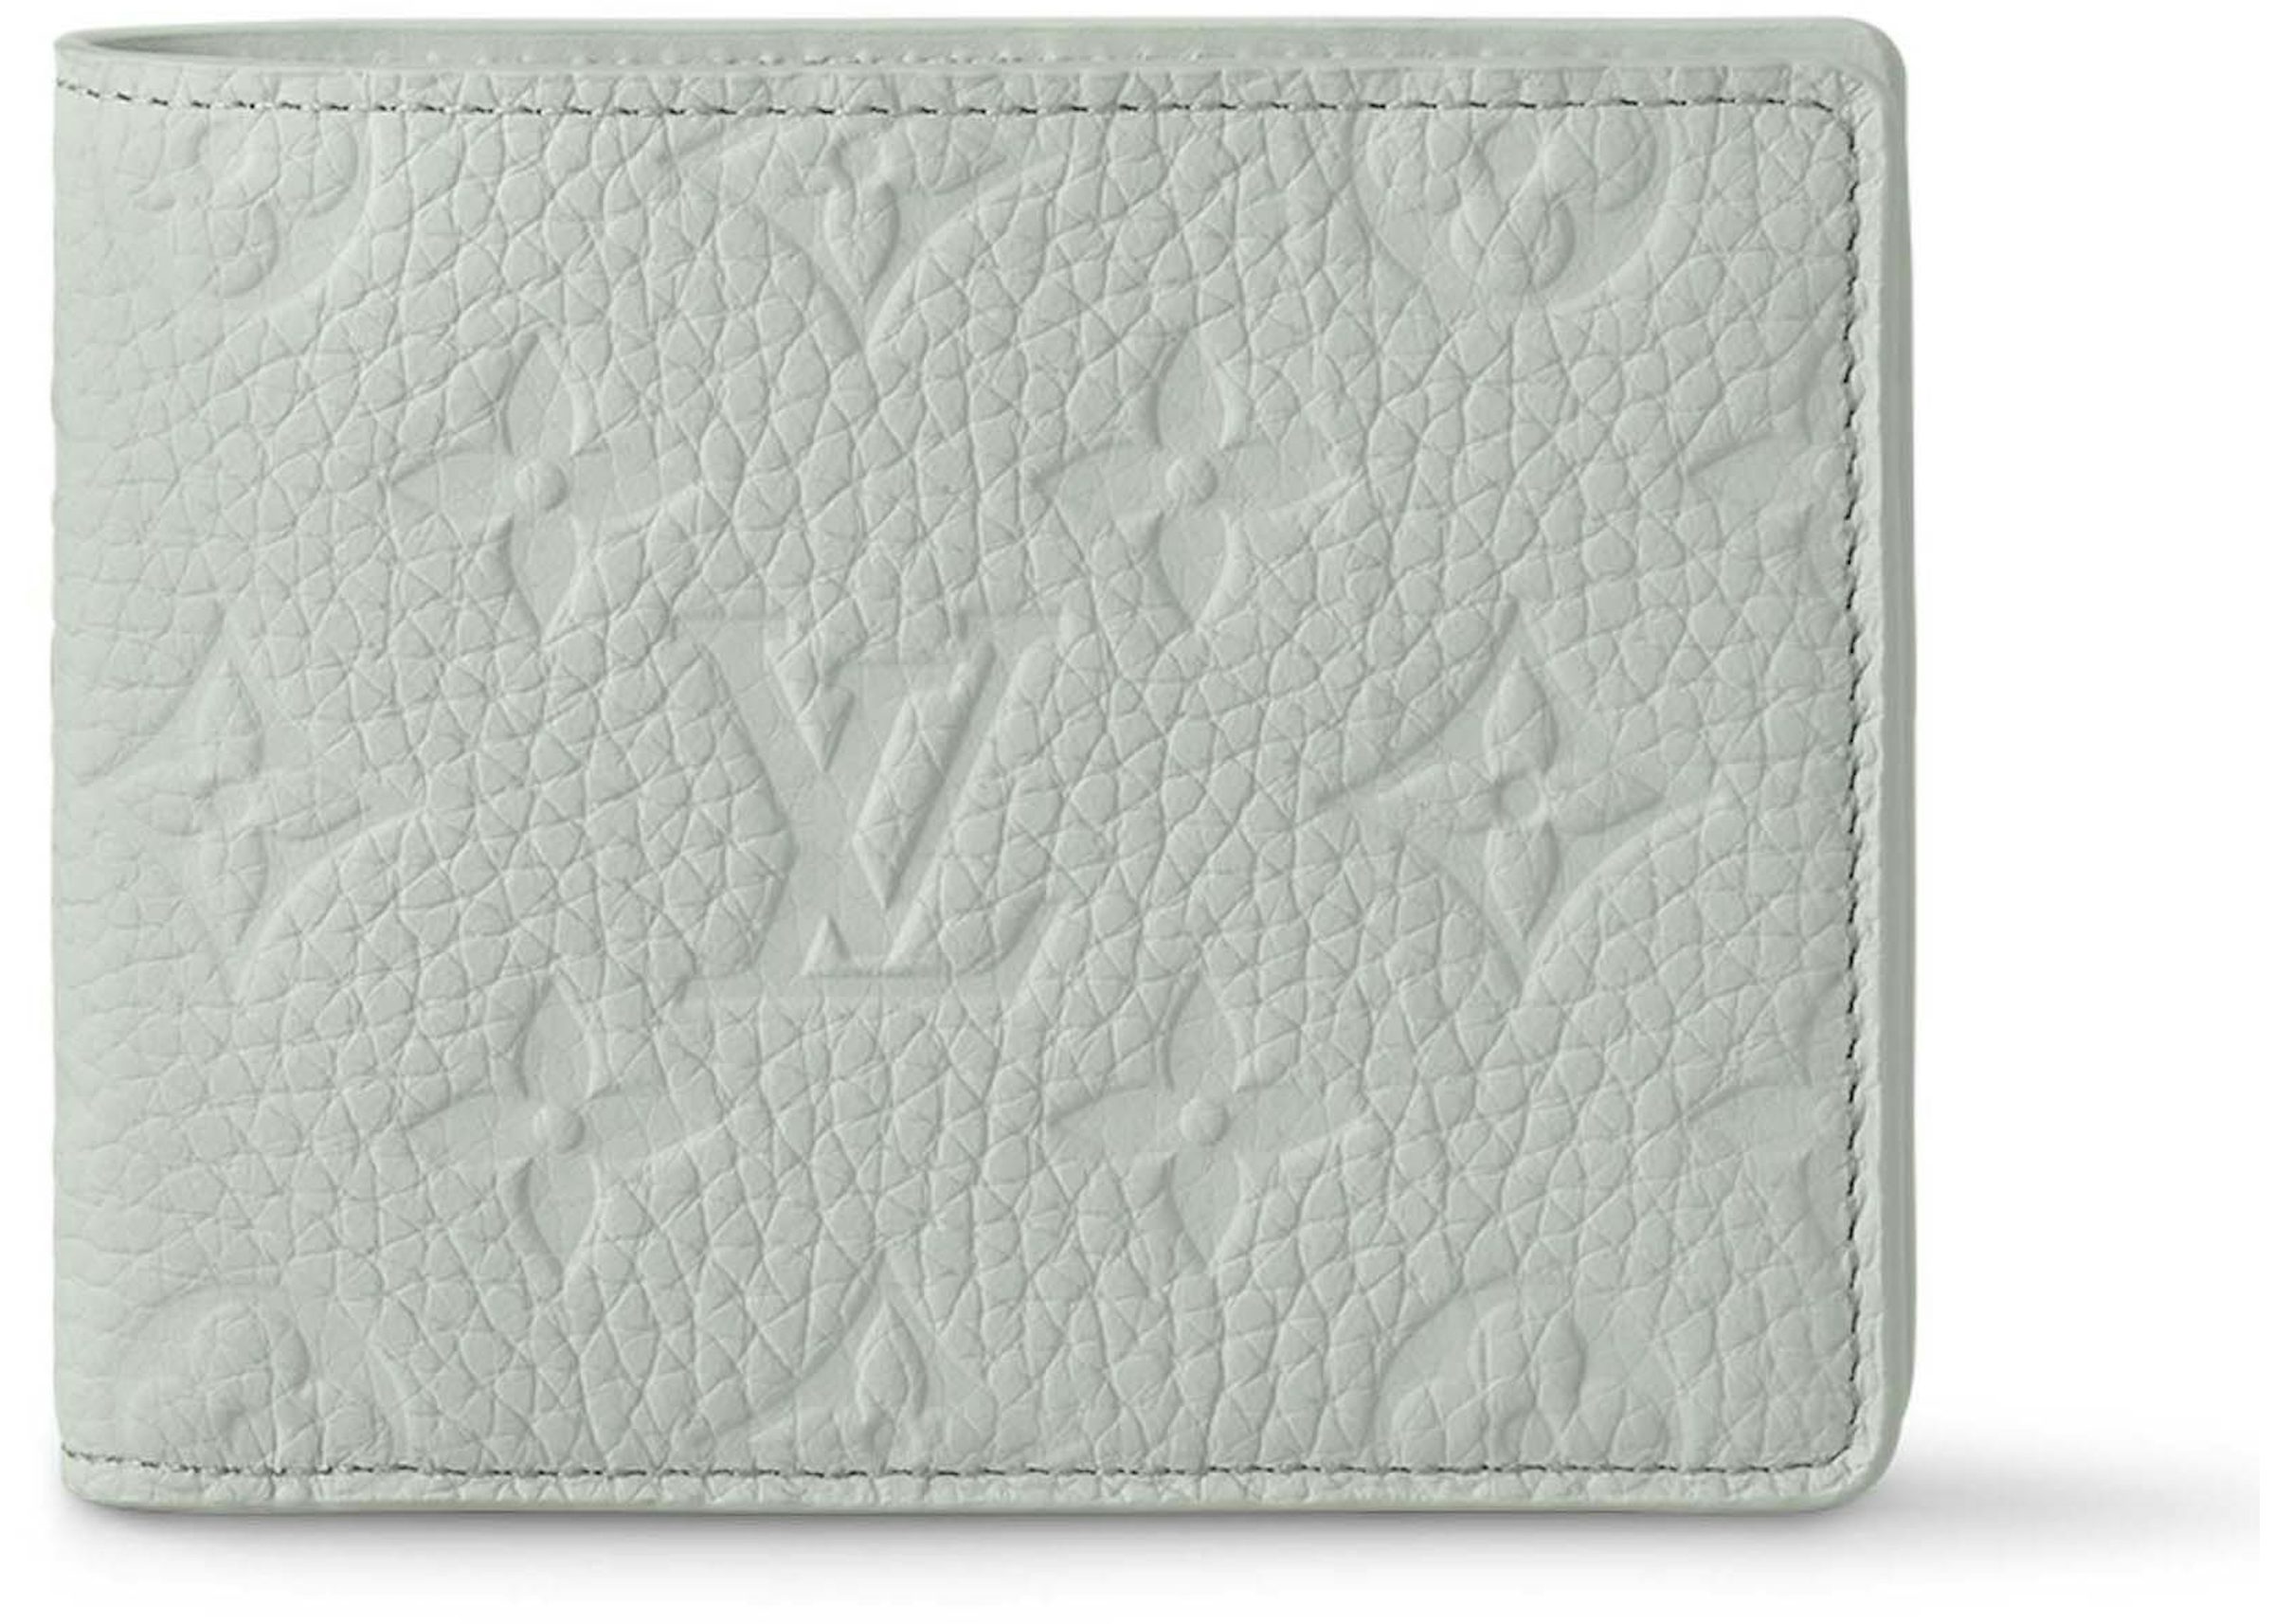 lv grey wallet